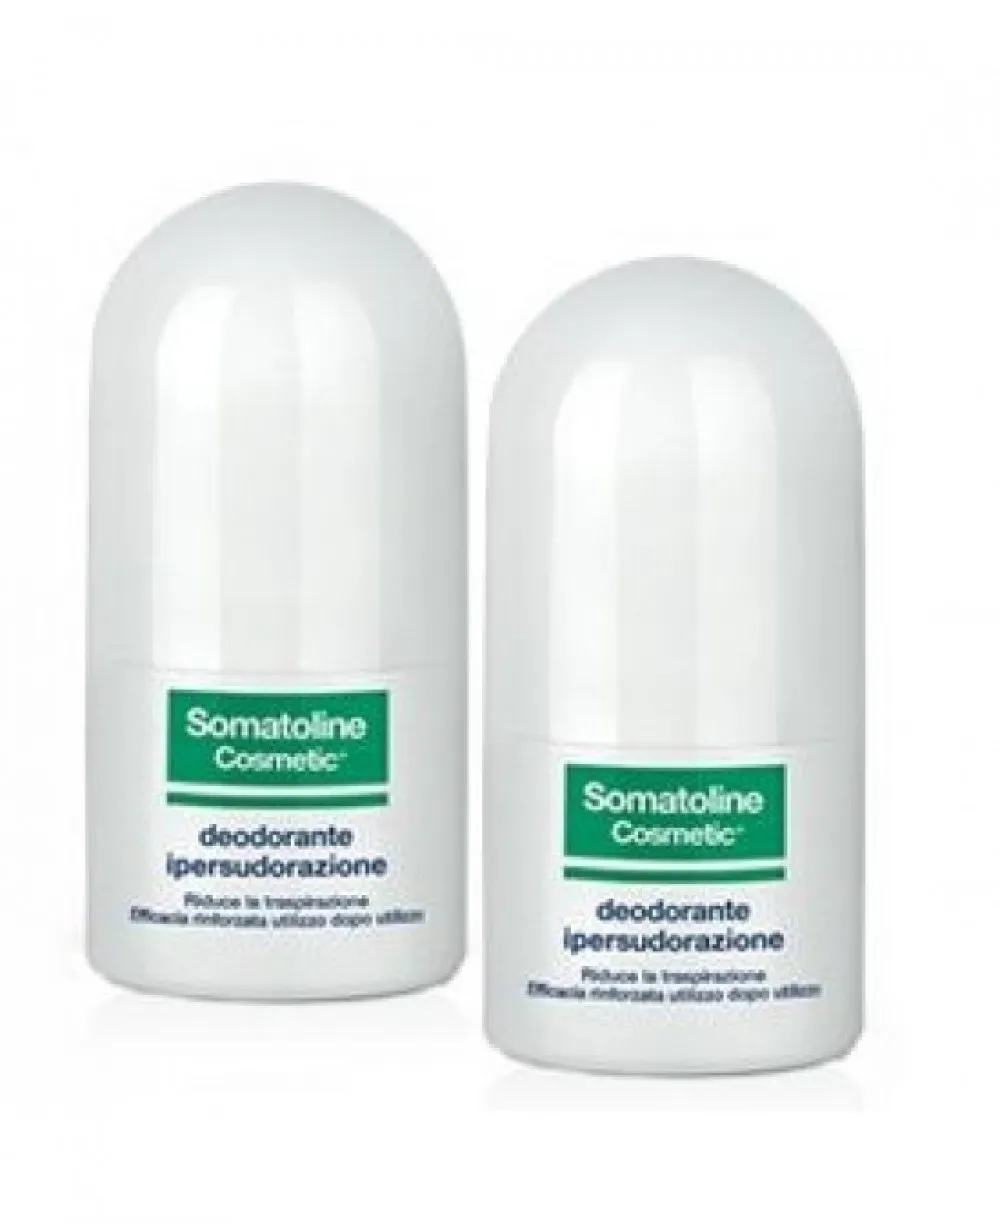 Somatoline Cosmetic Deodorante Ipersudorazione Roll-on Duetto 2x40 Ml